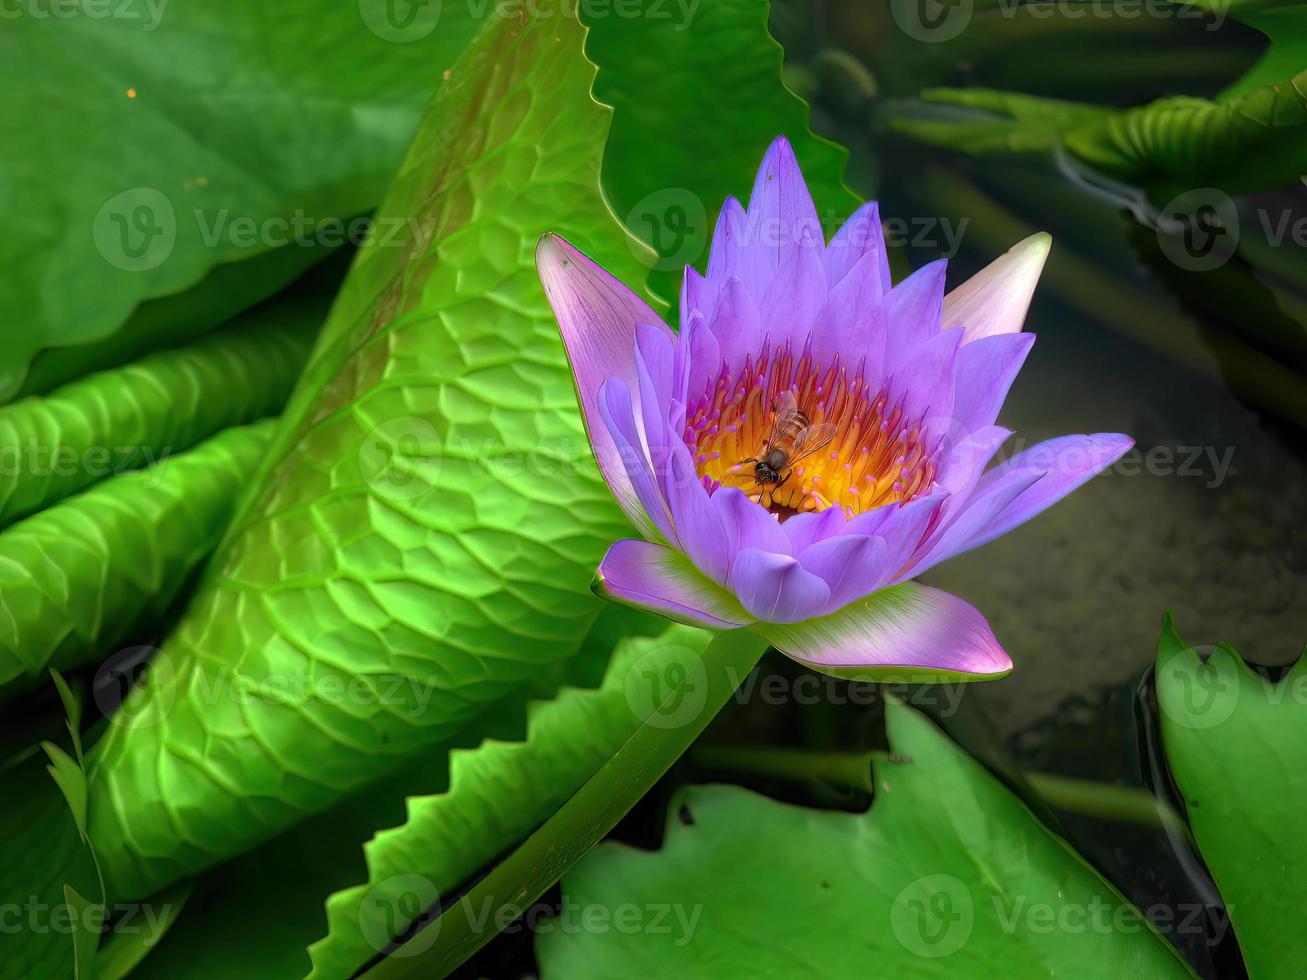 una abeja chupando néctar del polen de loto púrpura, fondo de hojas de loto verde, elemento, spa, signo de meditación pacífica, calma, flores tropicales foto